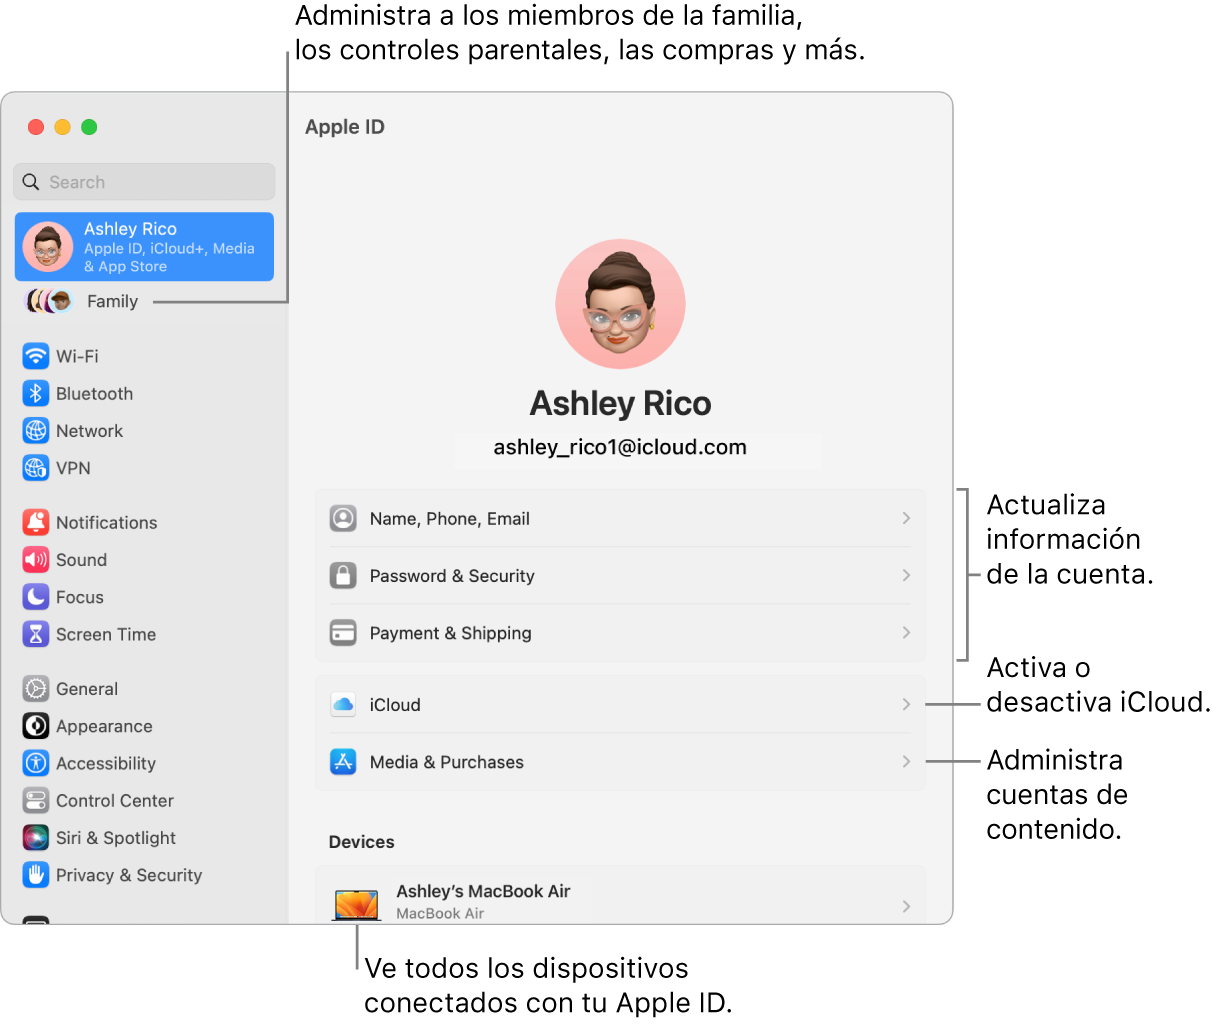 La configuración de Apple ID en Configuración del Sistema con textos para actualizar la información de la cuenta, activar o desactivar funciones de iCloud, administrar cuentas de contenido, y Familia, donde puedes administrar familiares, controles parentales, compras y más.